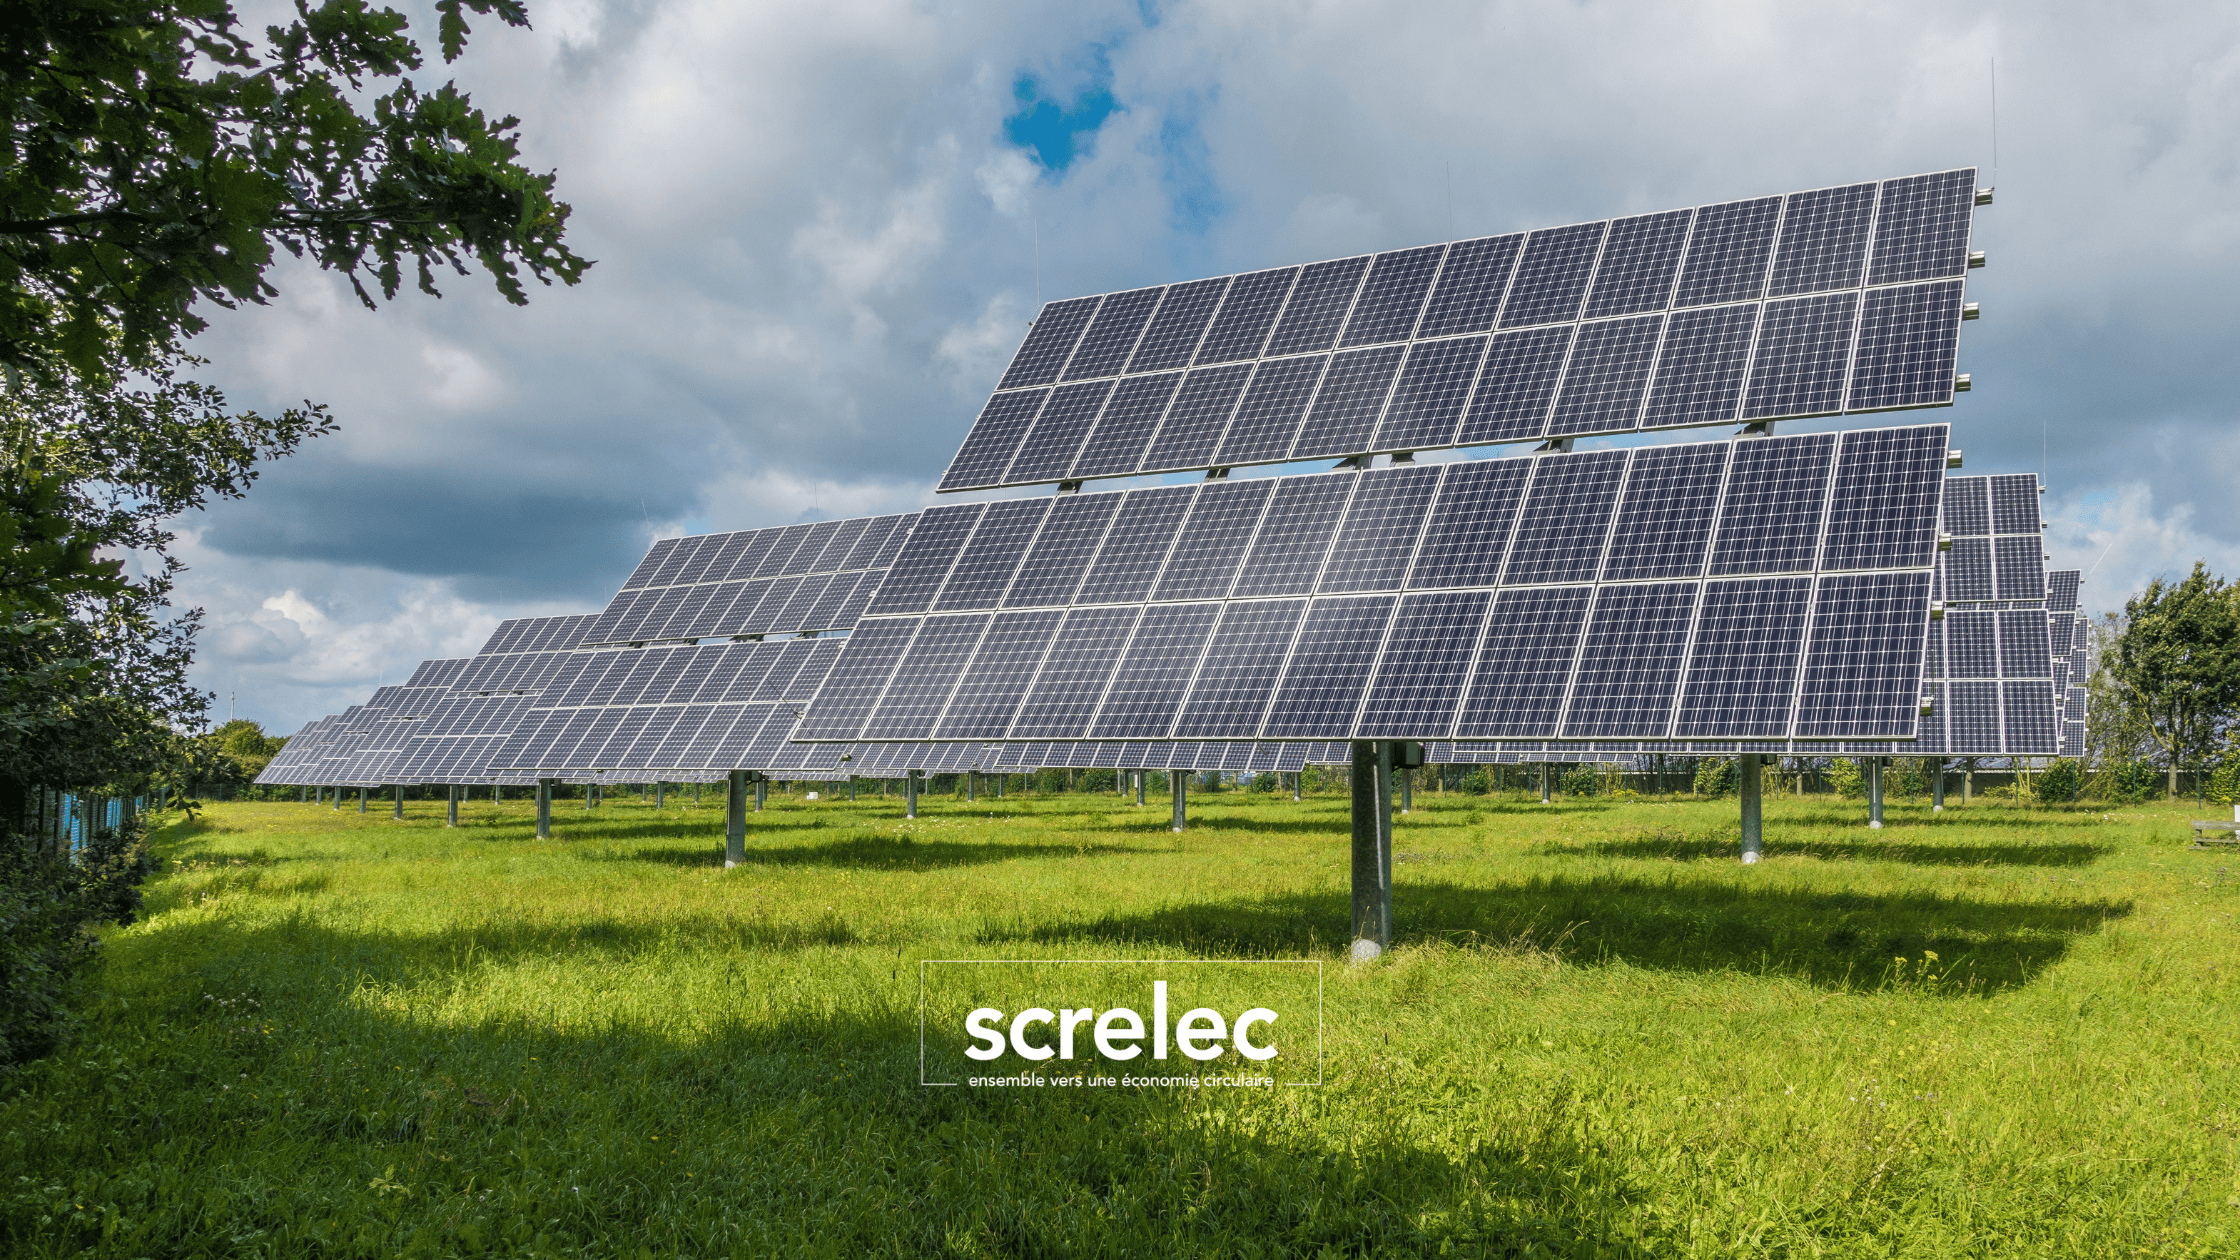 Installation de panneaux solaires pour favoriser les énergies renouvelables